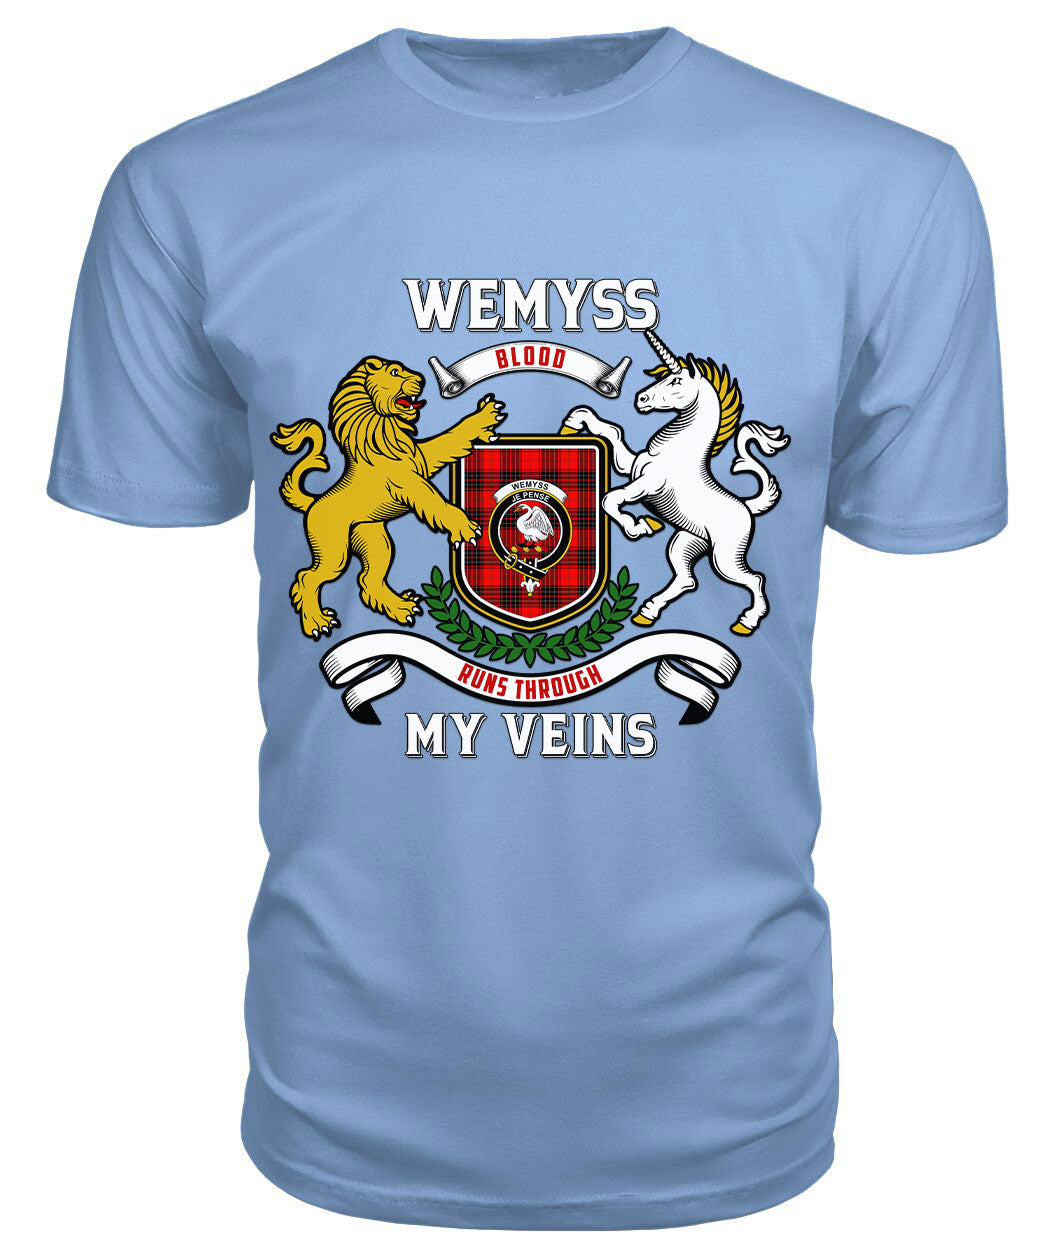 Wemyss Modern Tartan Crest 2D T-shirt - Blood Runs Through My Veins Style